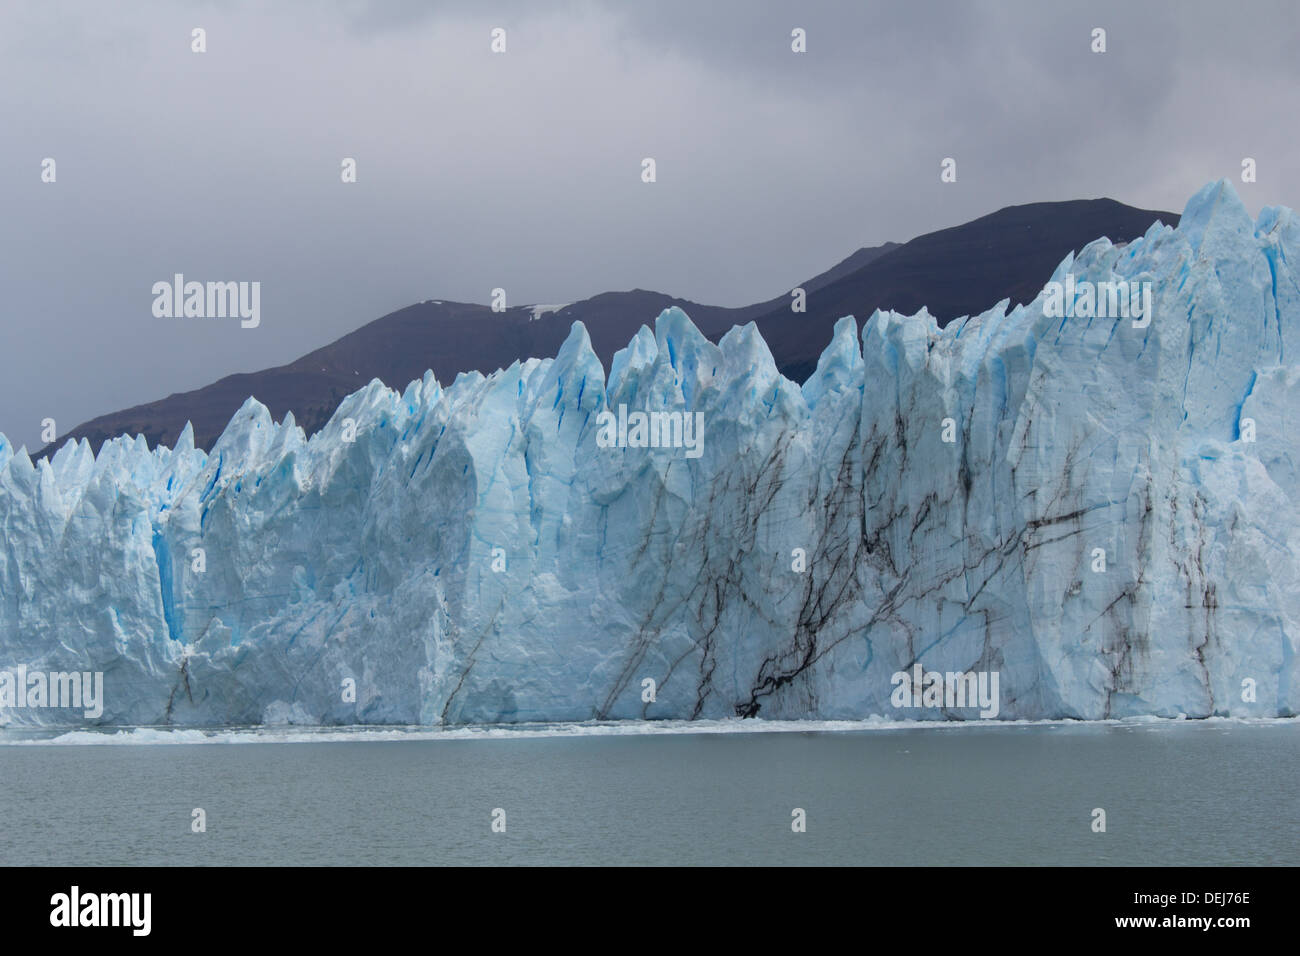 Perito Moreno Glacier, Los Glaciares National Park, Santa Cruz province, Argentina Stock Photo